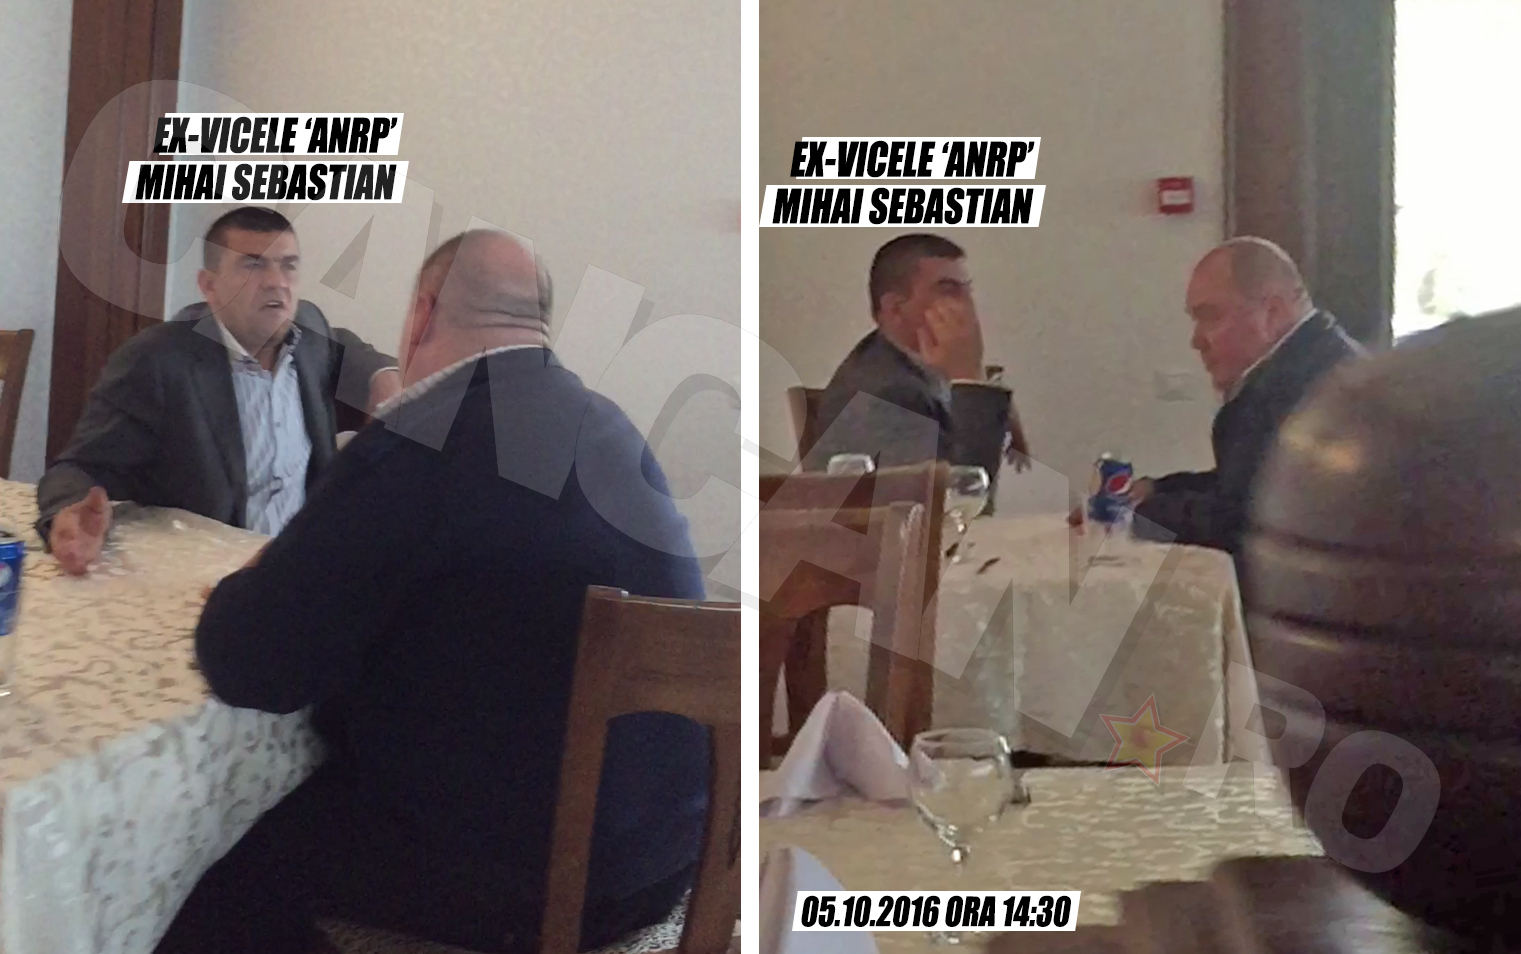 După întâlnirea cu prietenul Stelu, Mihai Sebastian s-a retras în restaurant alături de alt bărbat